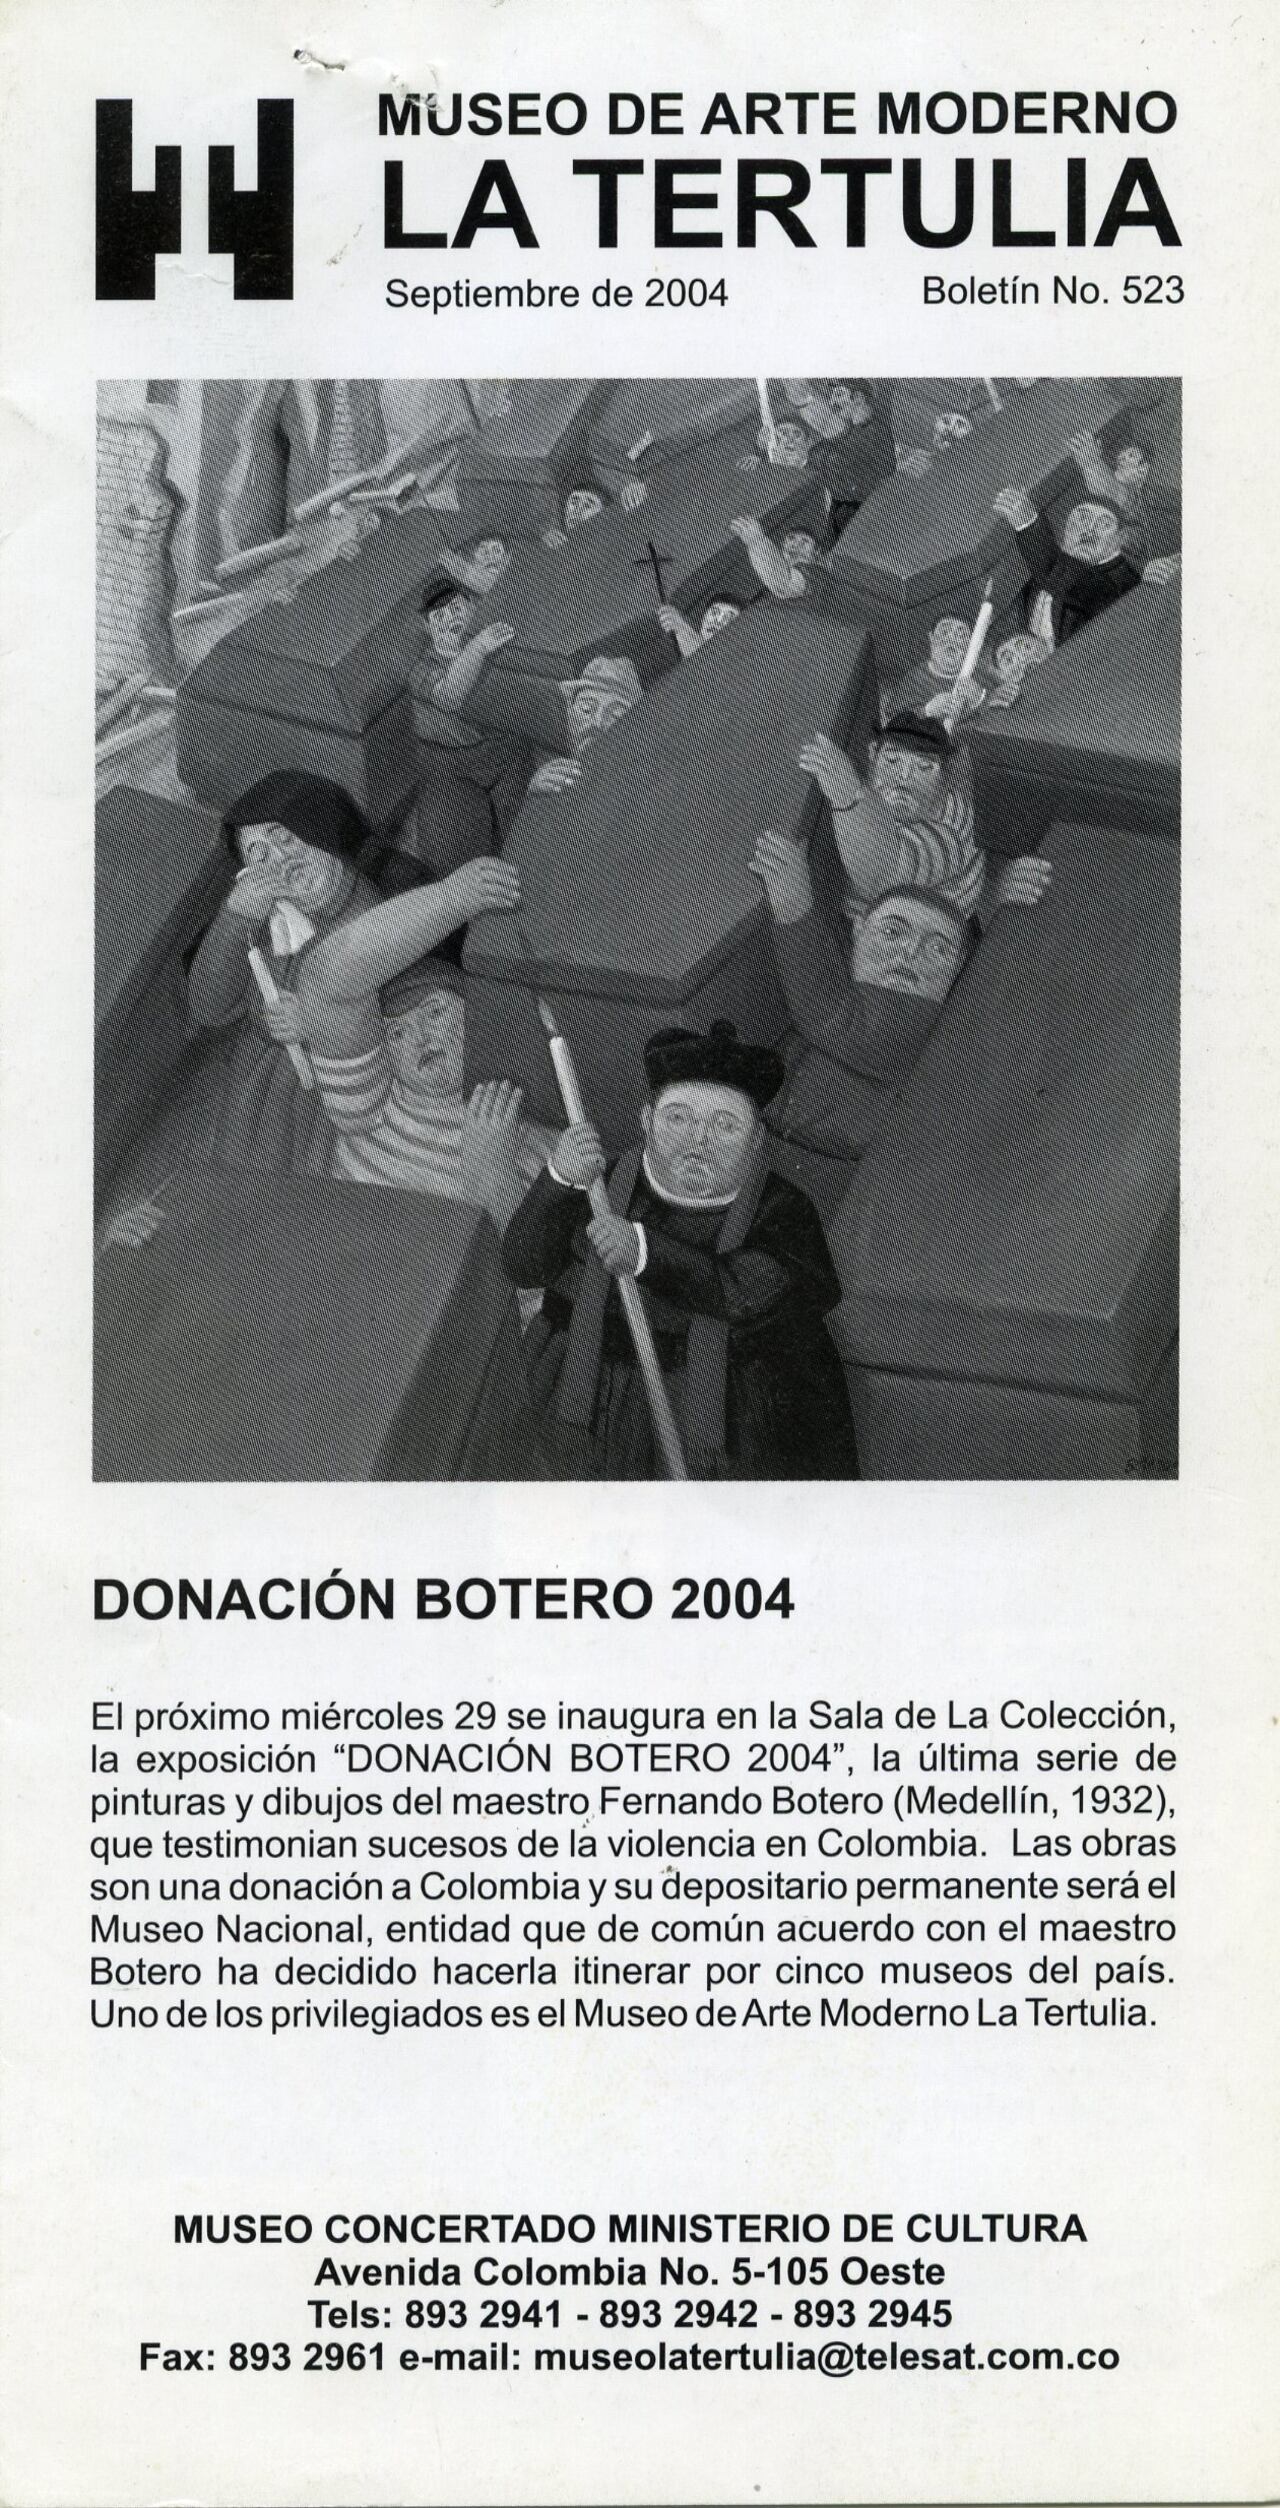 Imágenes de la exposición itinerante donación Botero 2004. Las cuales eran episodios de violencia en Colombia. 15 de septiembre de 2023. Foto Cortesía para El País / Museo la Tertulia.